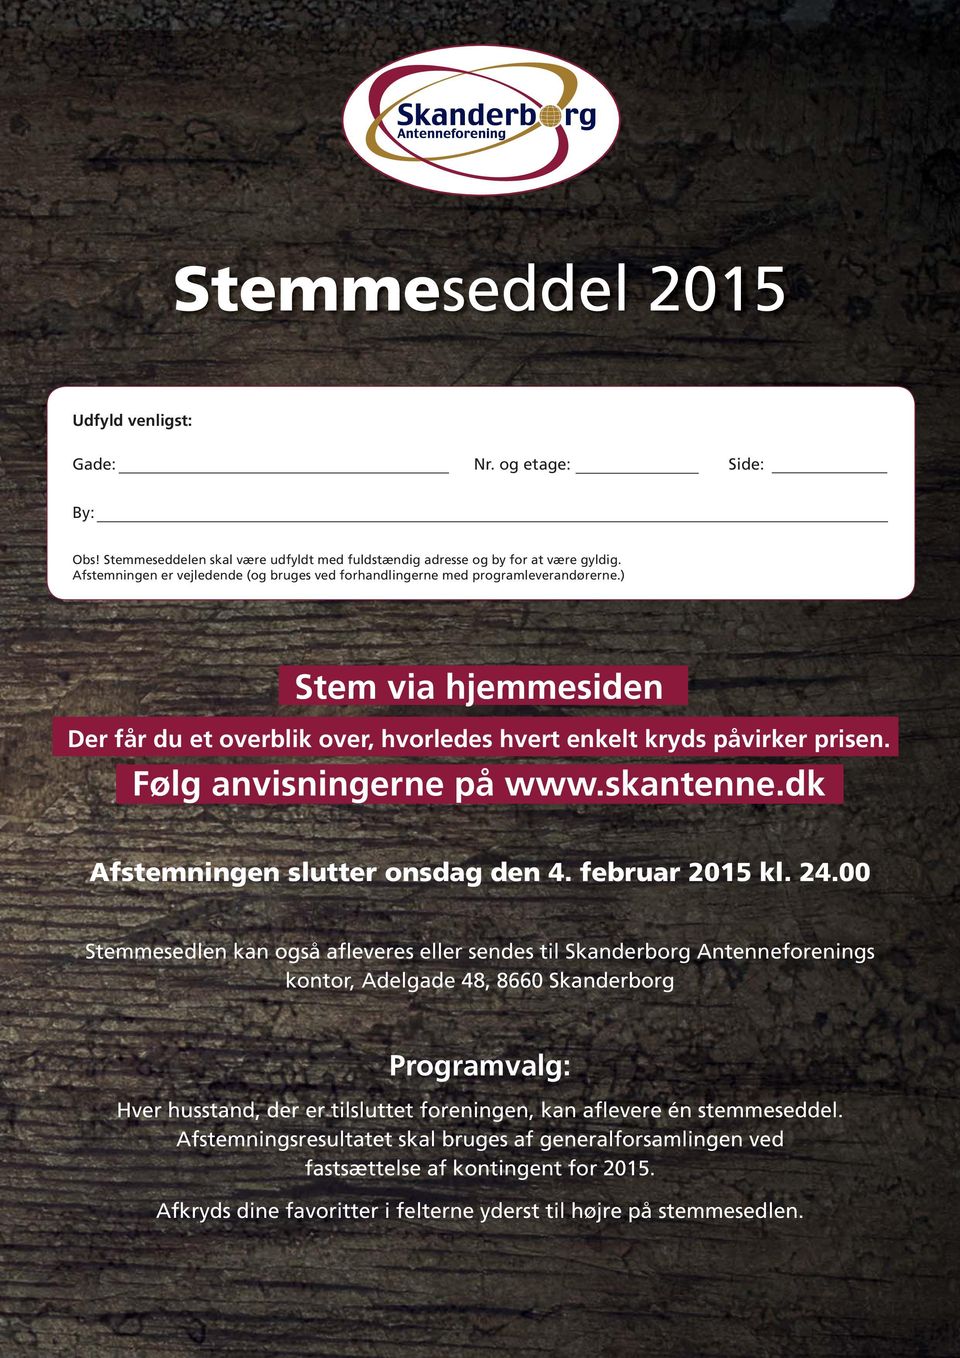 Følg anvisningerne på www.skantenne.dk Afstemningen slutter onsdag den 4. februar 2015 kl. 24.